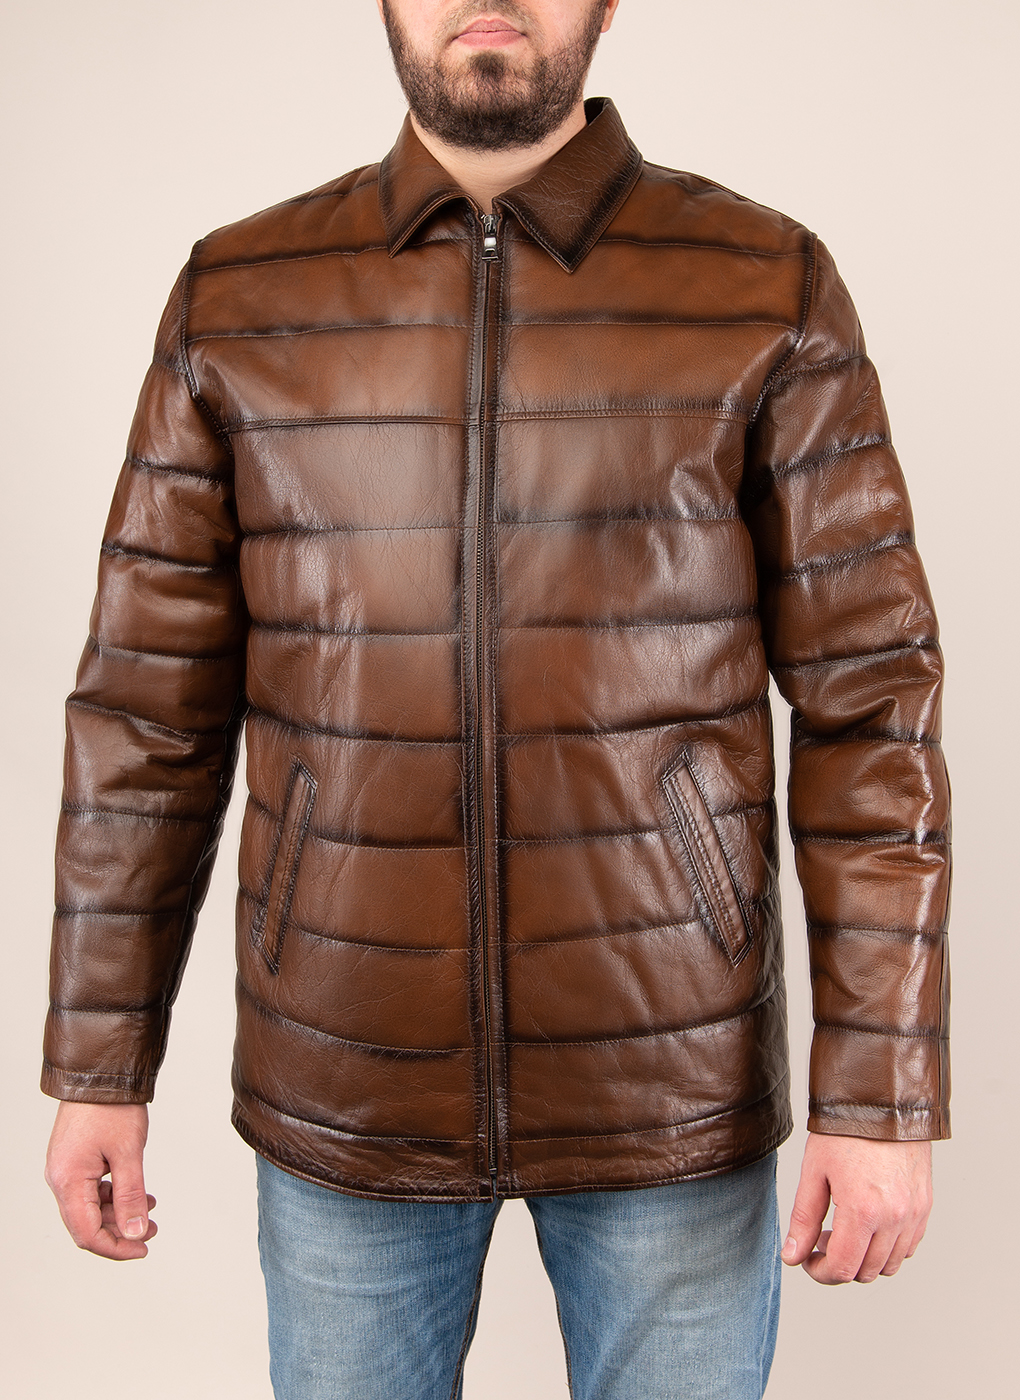 Кожаная куртка мужская Каляев 1625381 коричневая 44 RU